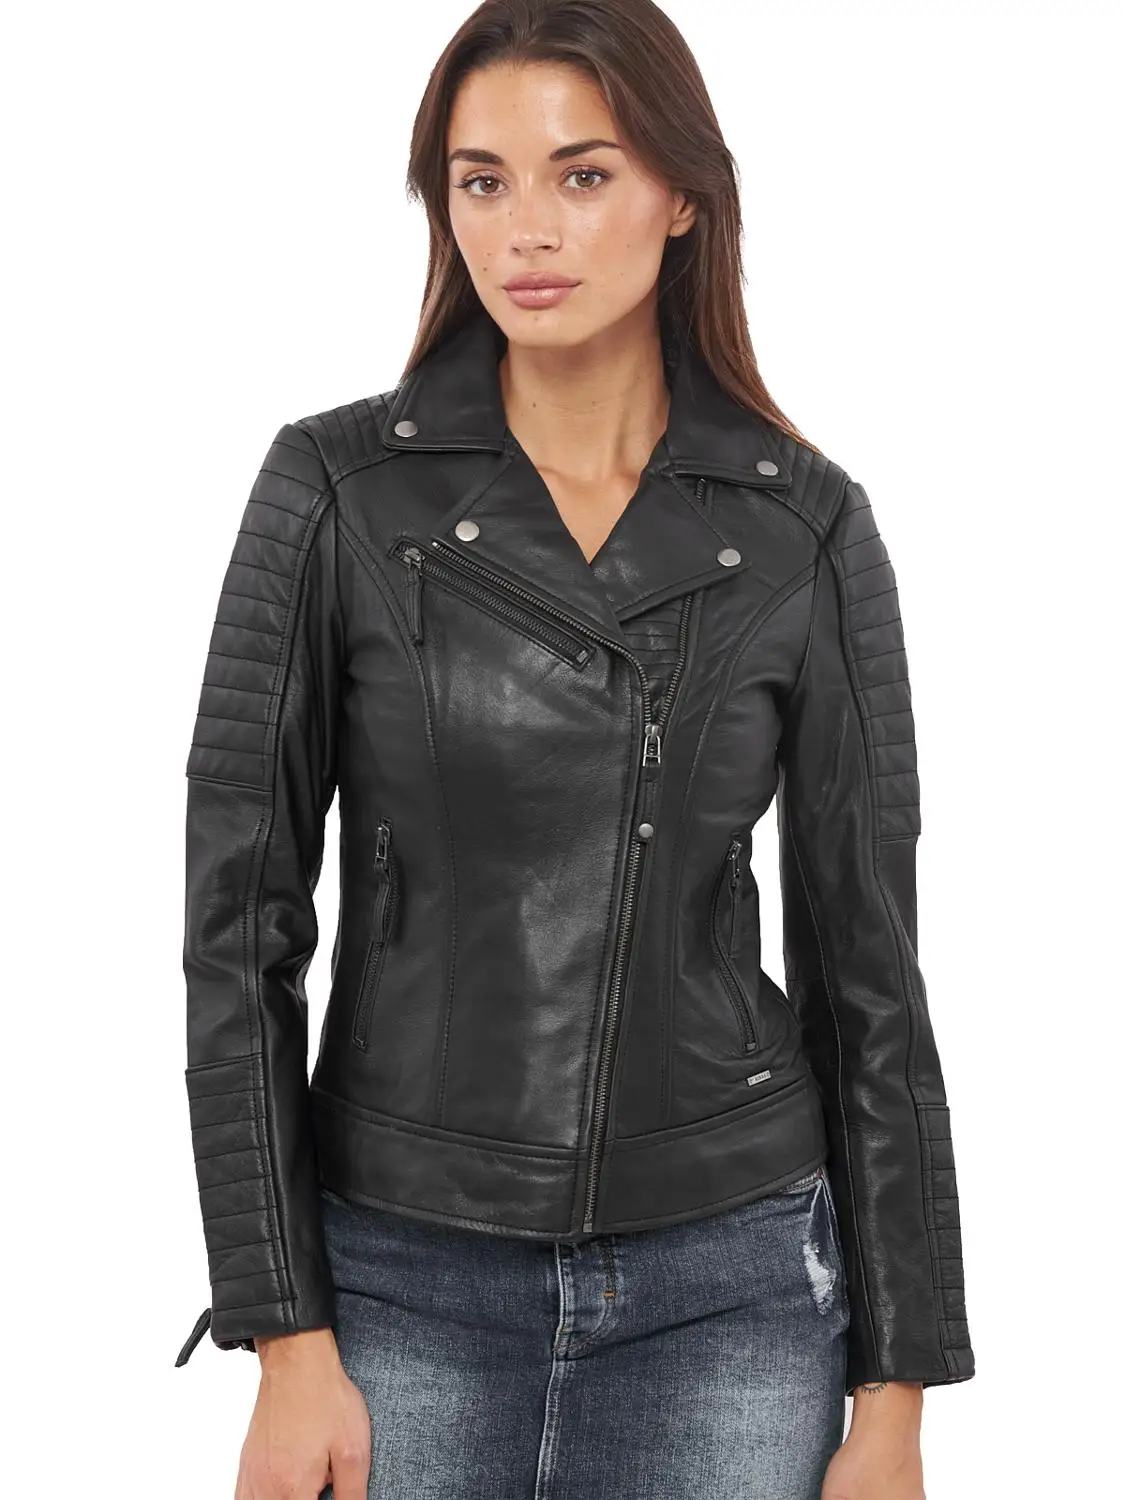 VAINAS, европейский бренд, Женская куртка из натуральной кожи буйвола, женские Мотоциклетные Куртки из натуральной кожи, байкерские куртки Electra